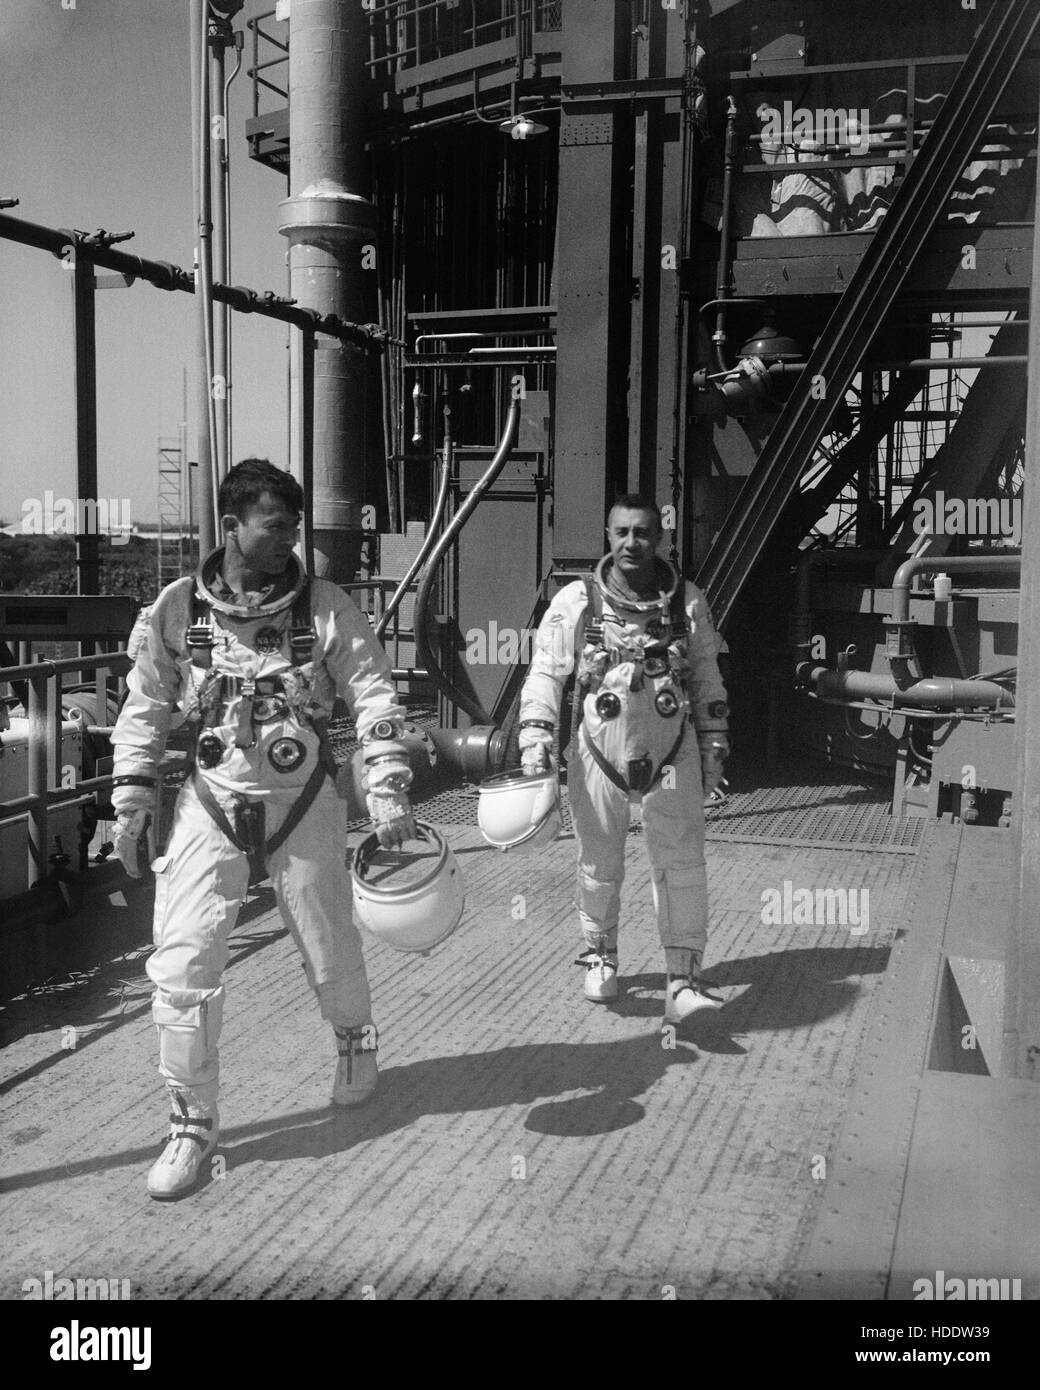 La NASA Gemini-Titan 3 primo equipaggio astronauti John Young (sinistra) e Gus Grissom lasciare il Cape Canaveral Air Force Station launch pad dopo Gemini-3 navicella spaziale le simulazioni di volo 1965 a Cape Canaveral, in Florida. Foto Stock